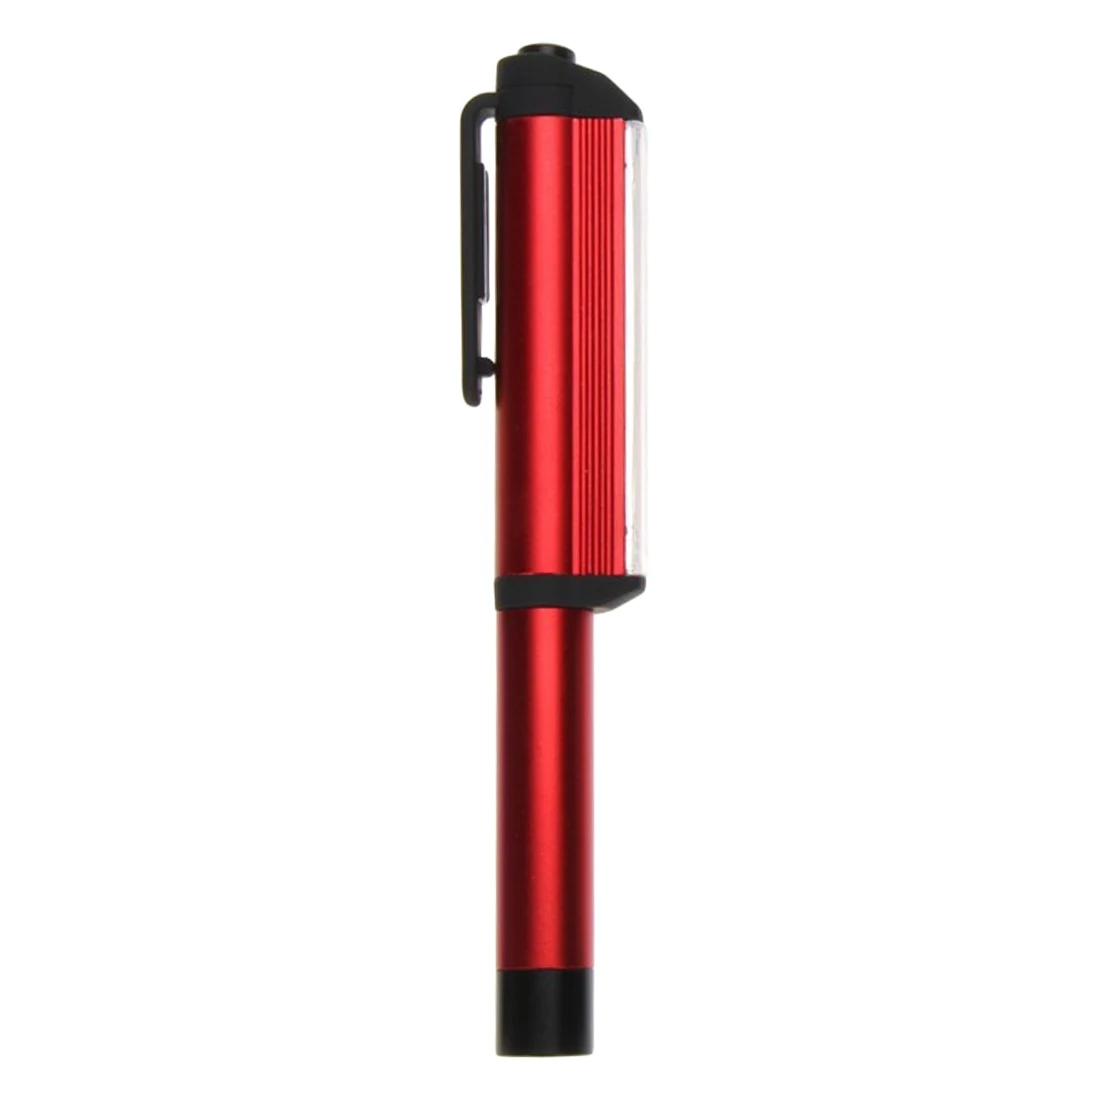 Универсальный COB светодио дный светодиодный мини ручка свет работы инспекции фонарик факел лампы с нижней магнит и клип - Испускаемый цвет: Red